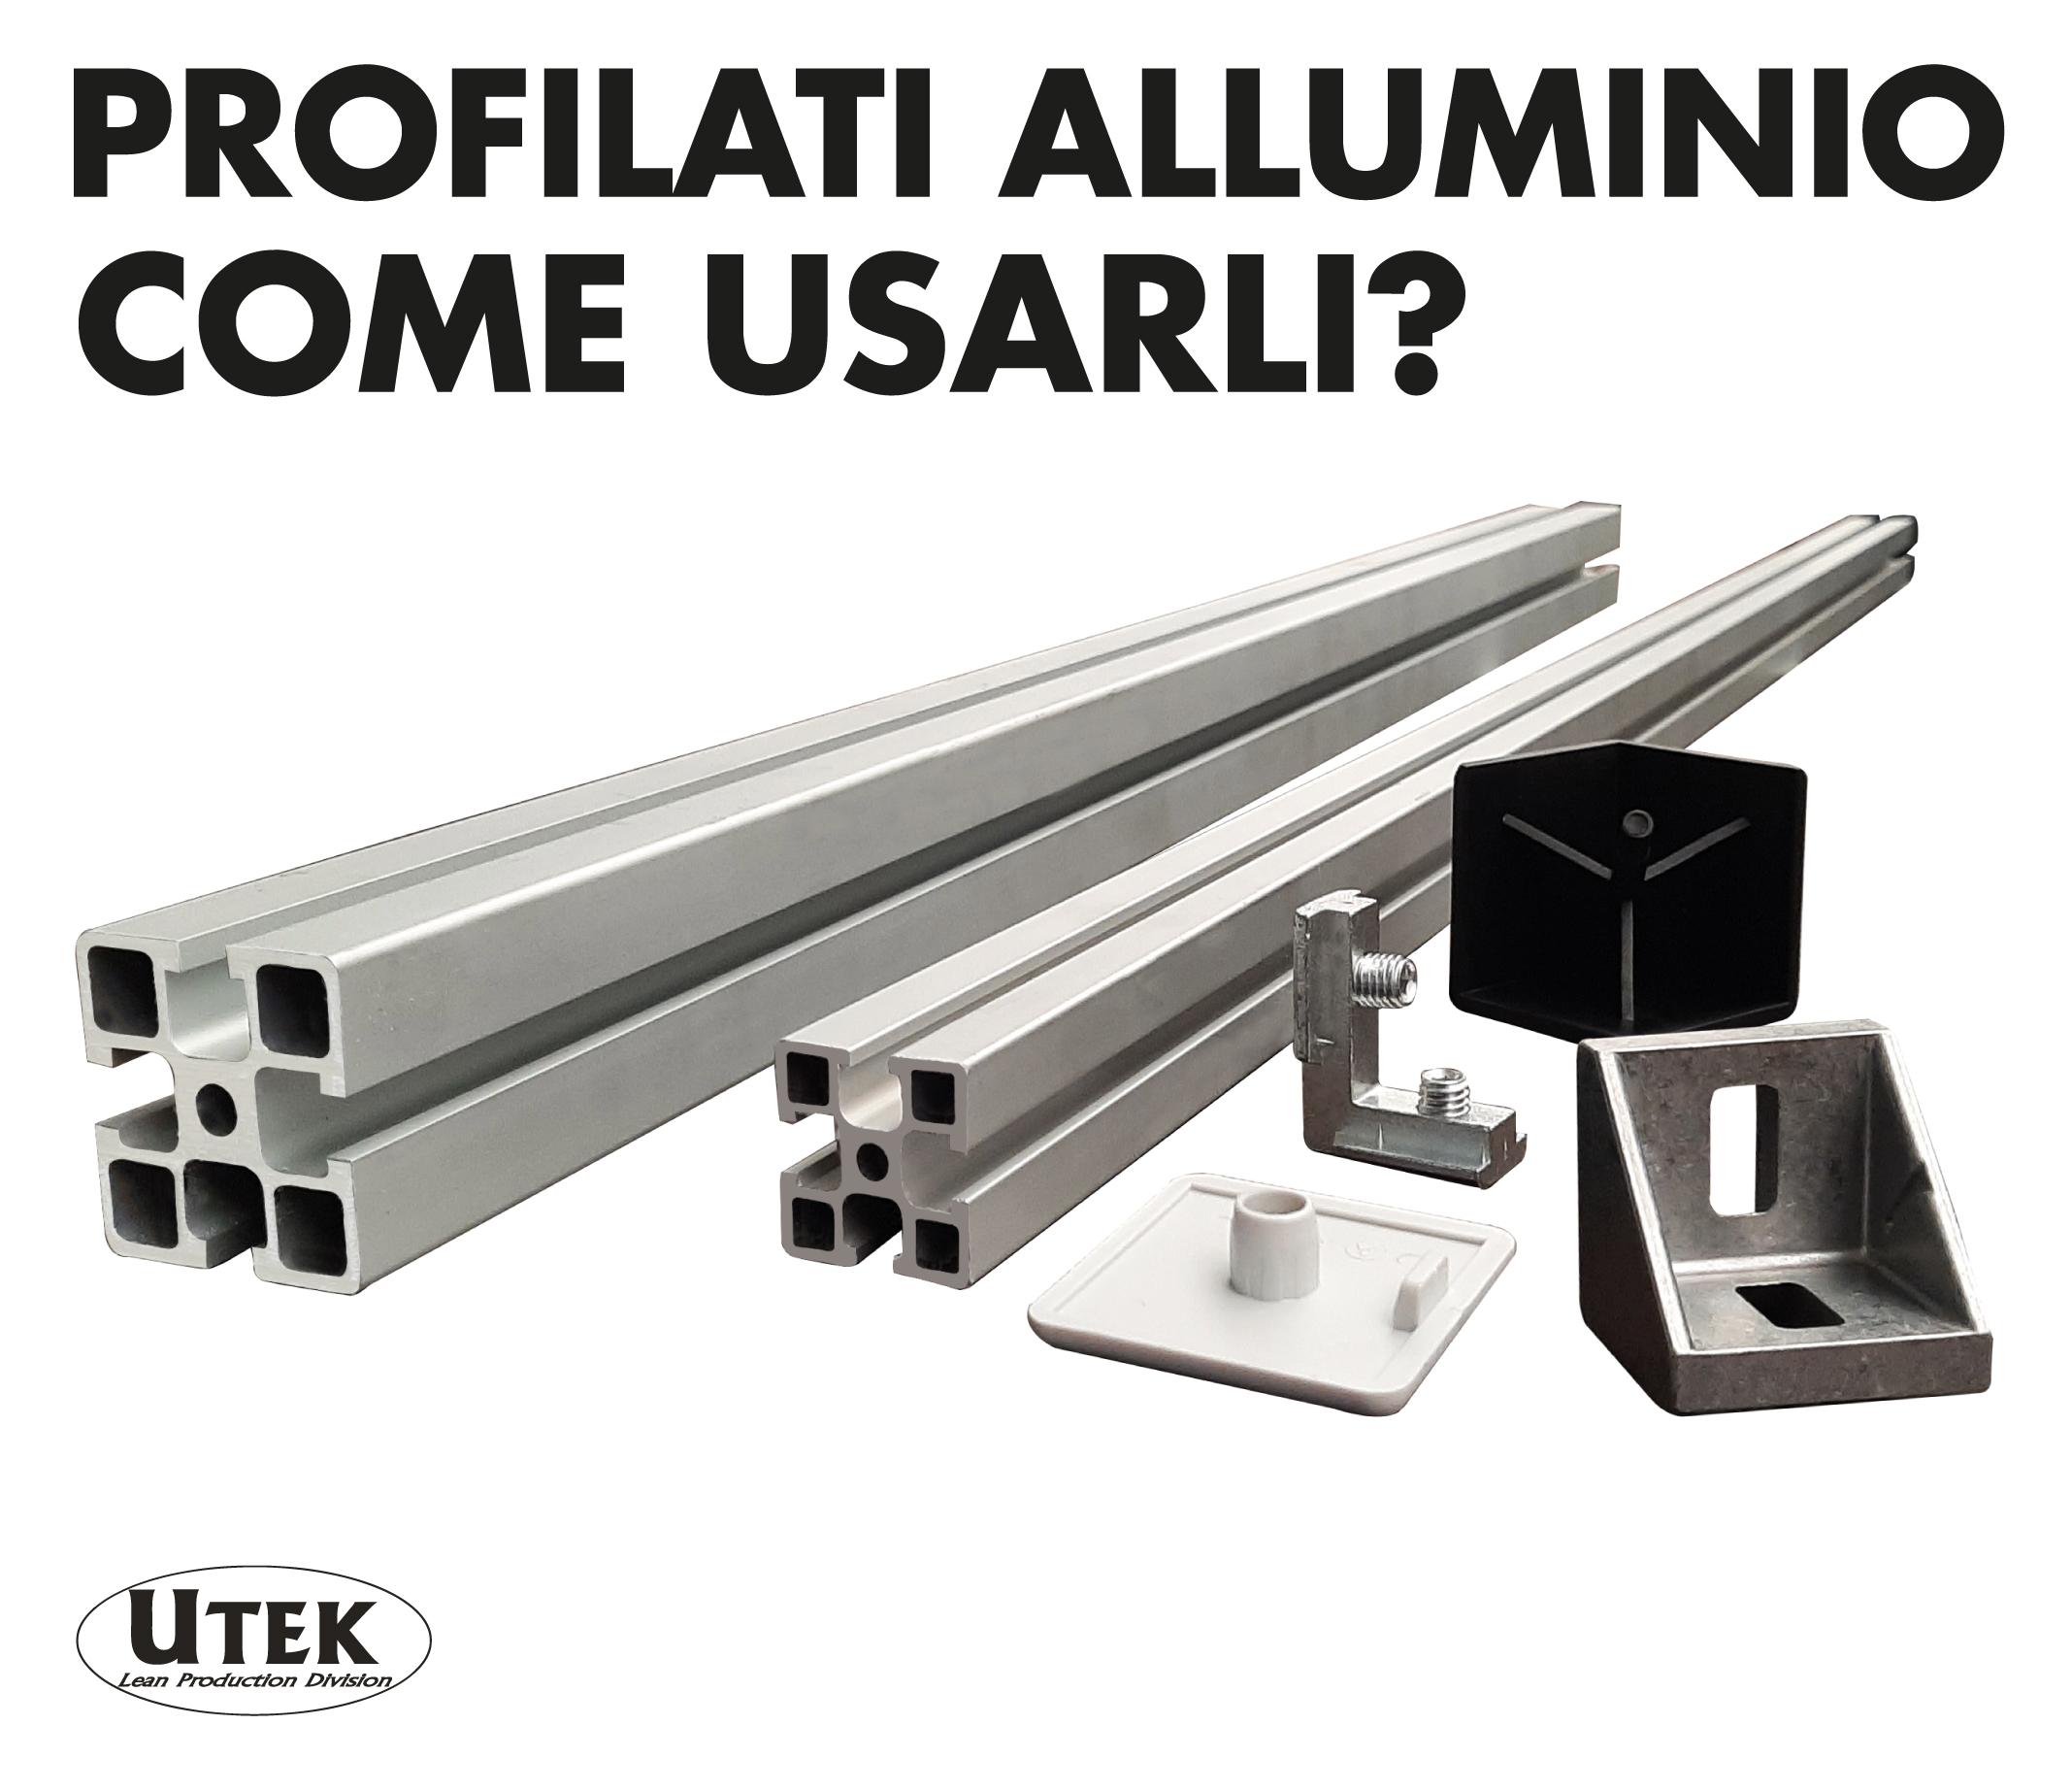 Profilati alluminio, come usarli?